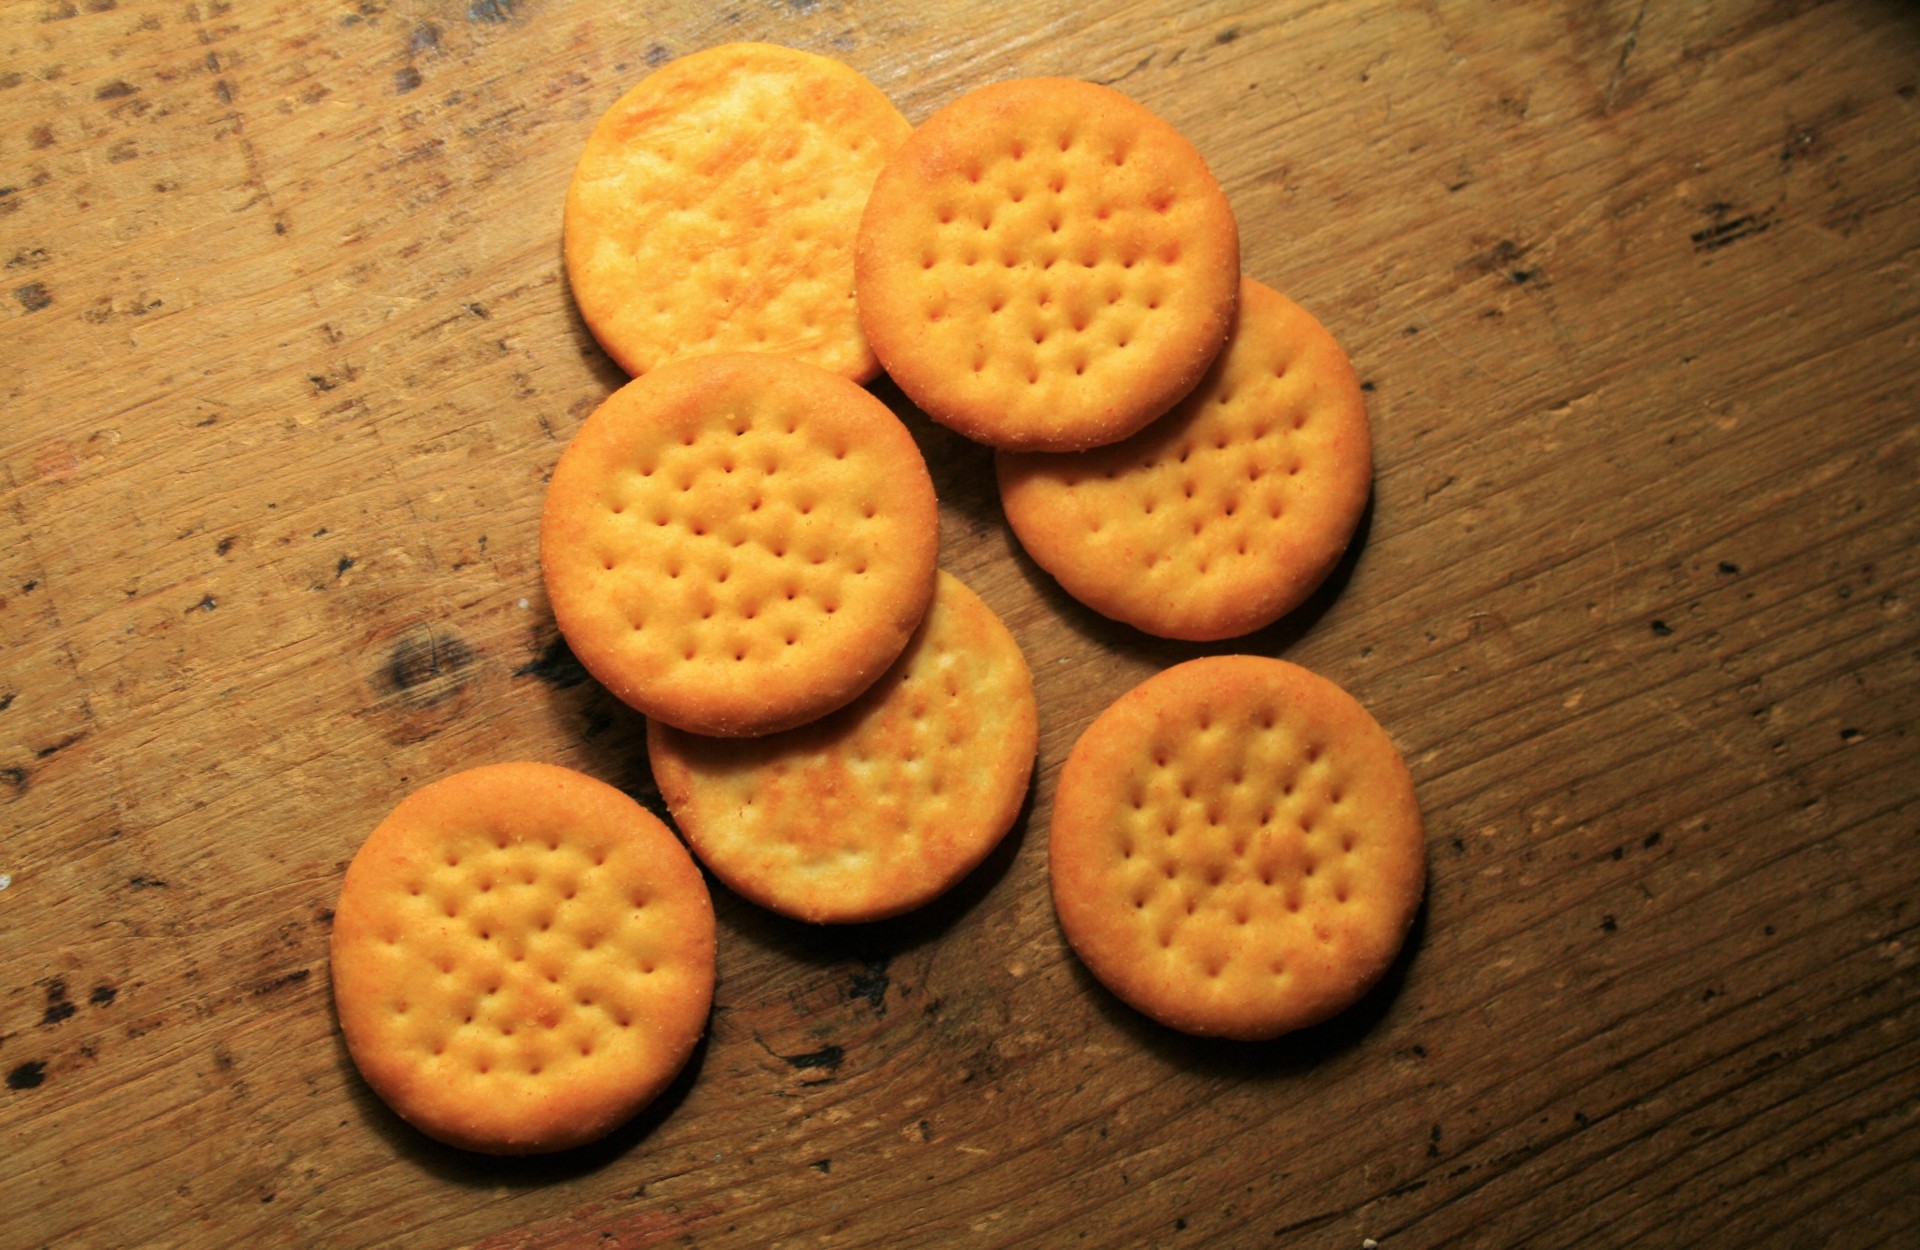 biscuits round disks free photo